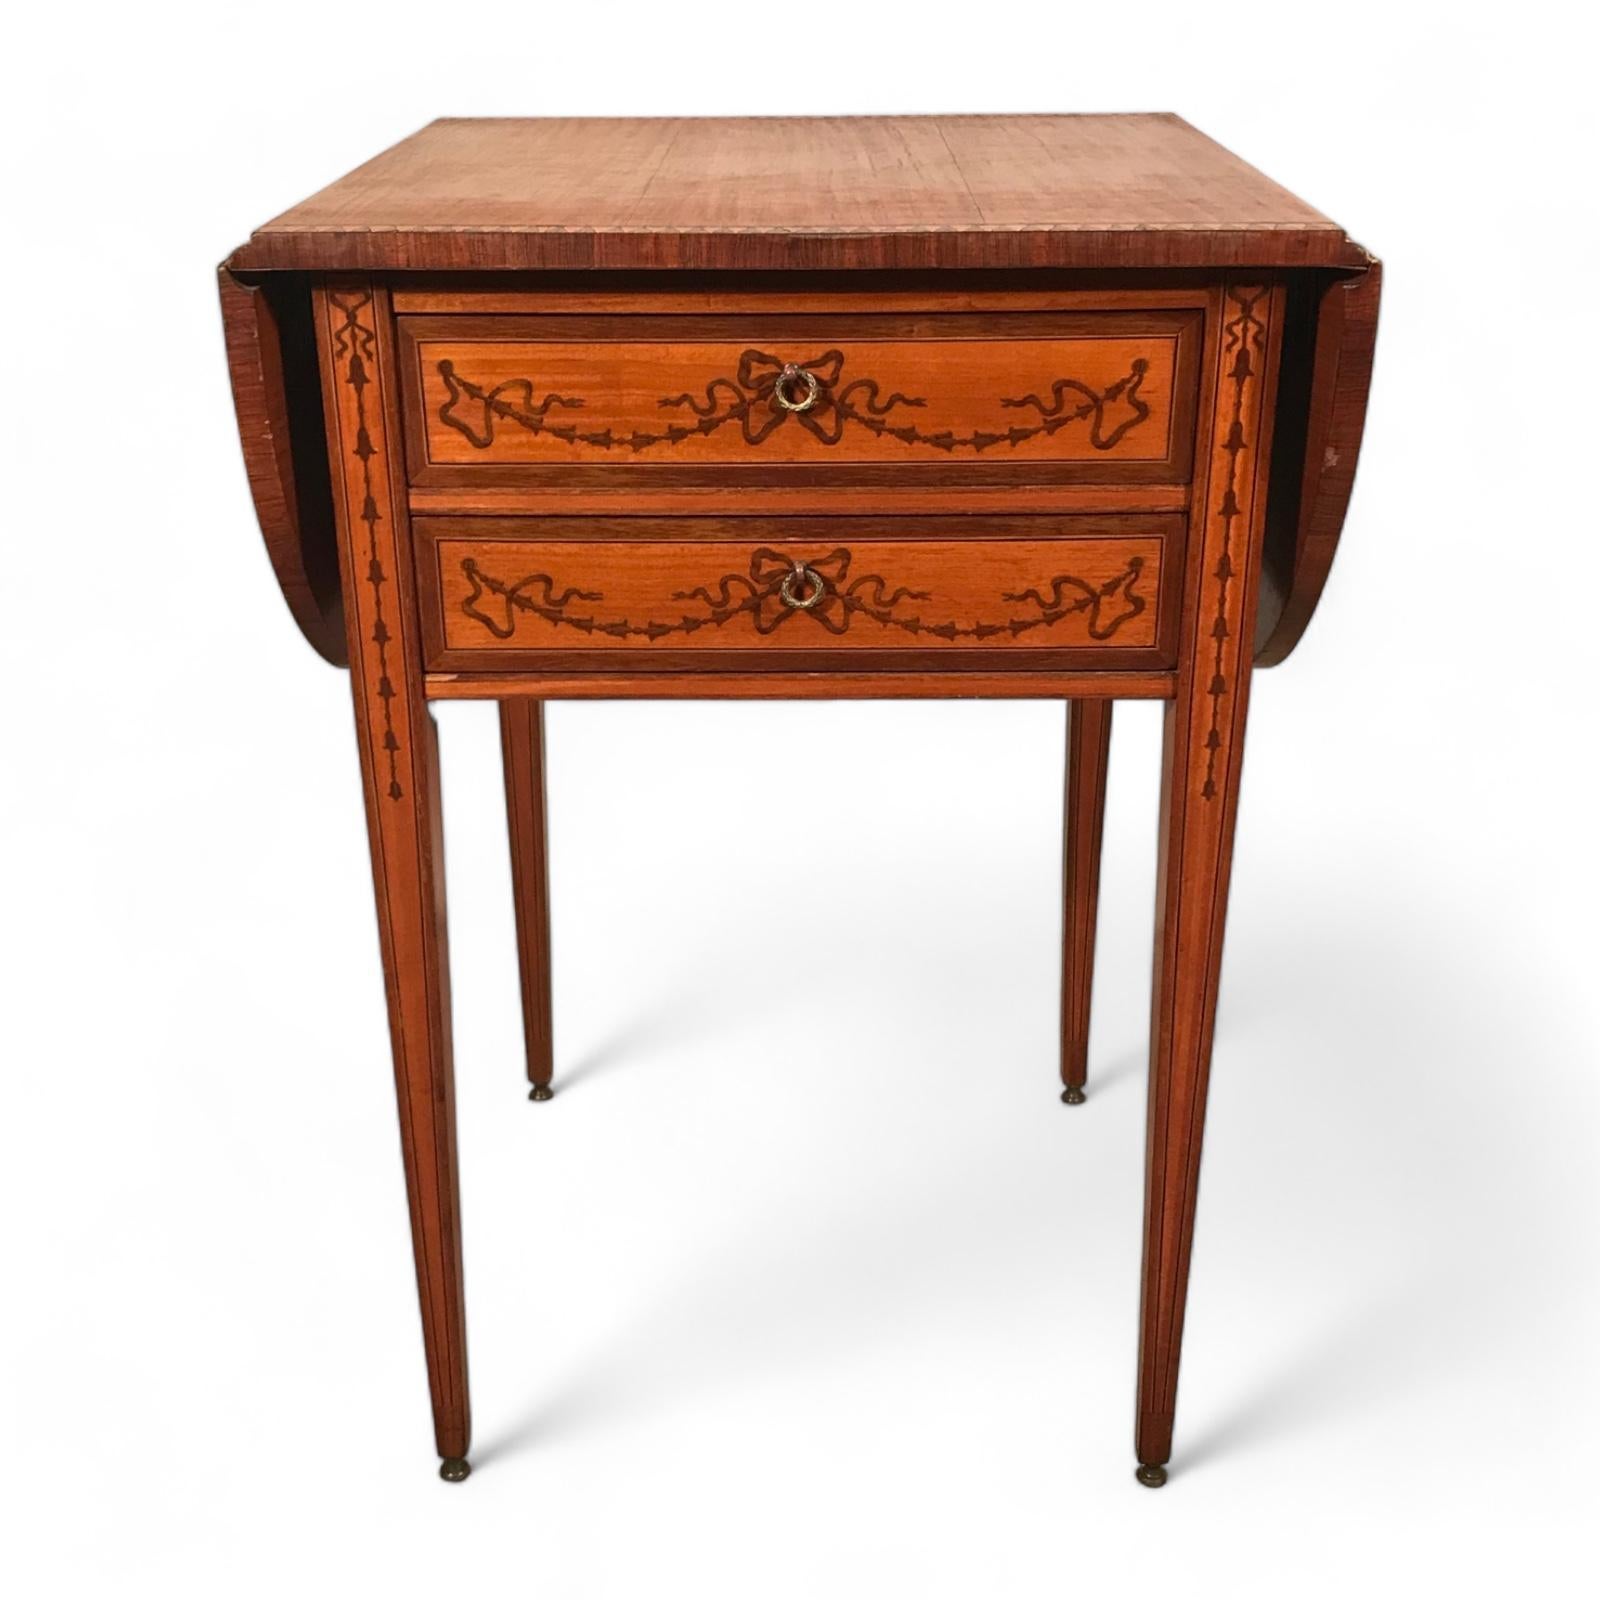 Entdecken Sie einen charmanten Vintage-Fund mit unserem Beistelltisch im georgianischen Stil, der aus dem frühen 20. Jahrhundert stammt. Dieser Tisch steht elegant auf schlanken Beinen und verfügt über eine bequeme Klappplatte mit einer reizvollen